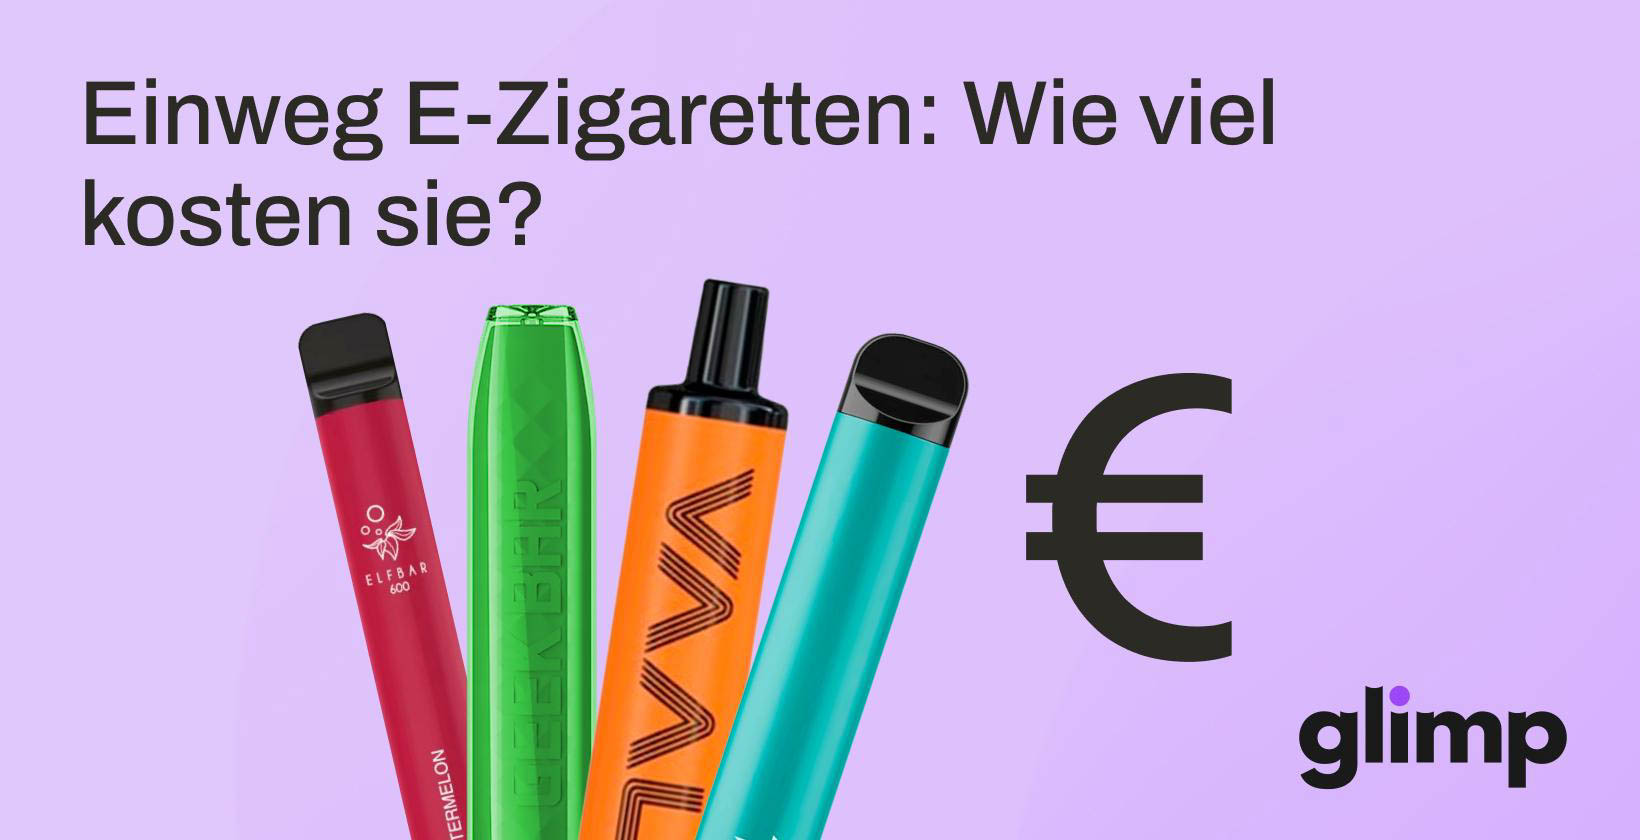 Einweg E-Zigaretten: Wie viel kosten sie?